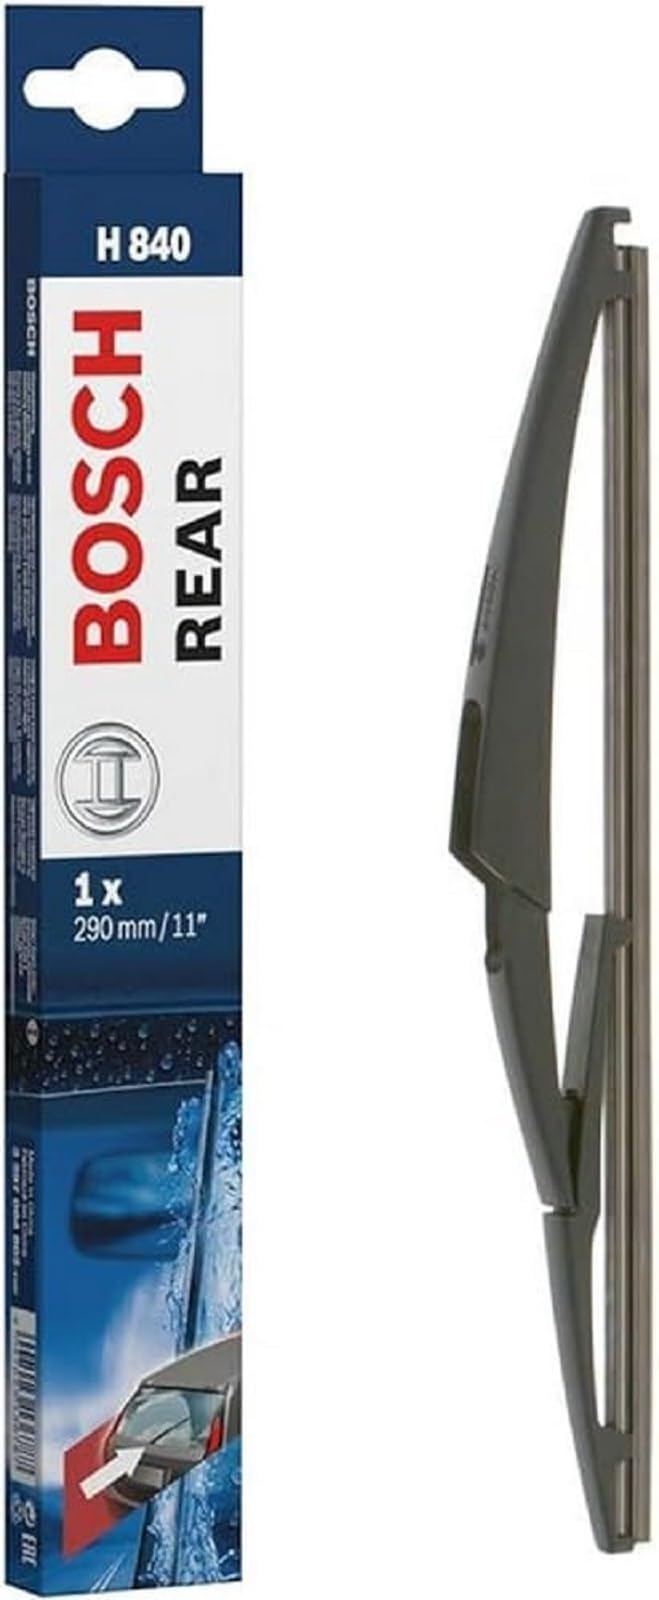 Bosch Scheibenwischer Rear H840, Länge: 290mm – Scheibenwischer für Heckscheibe von Bosch Automotive